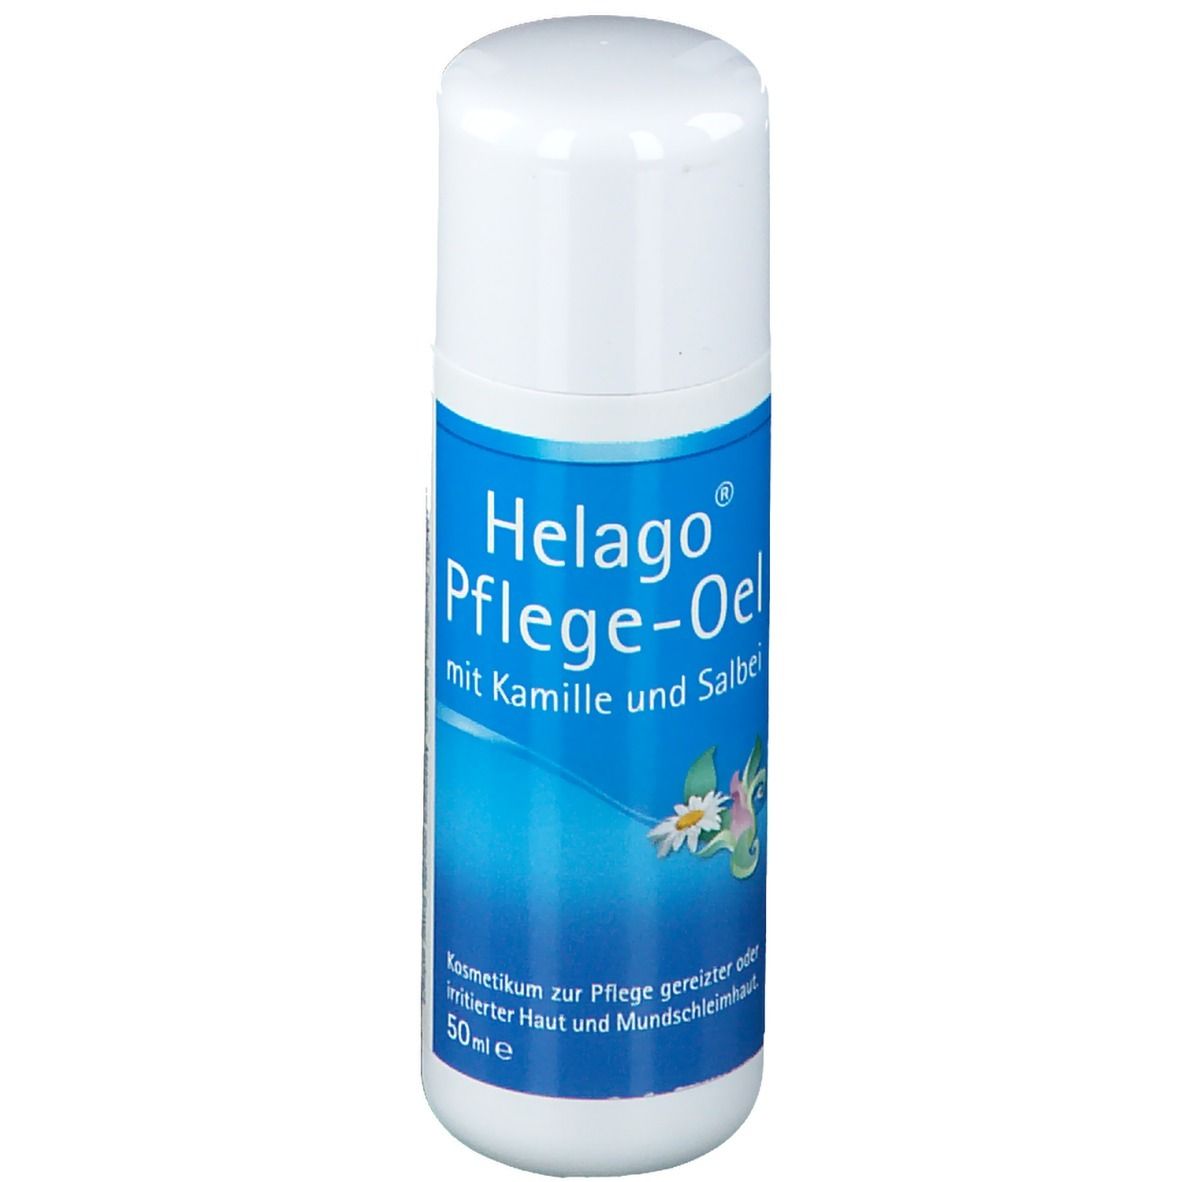 Helago® care oil